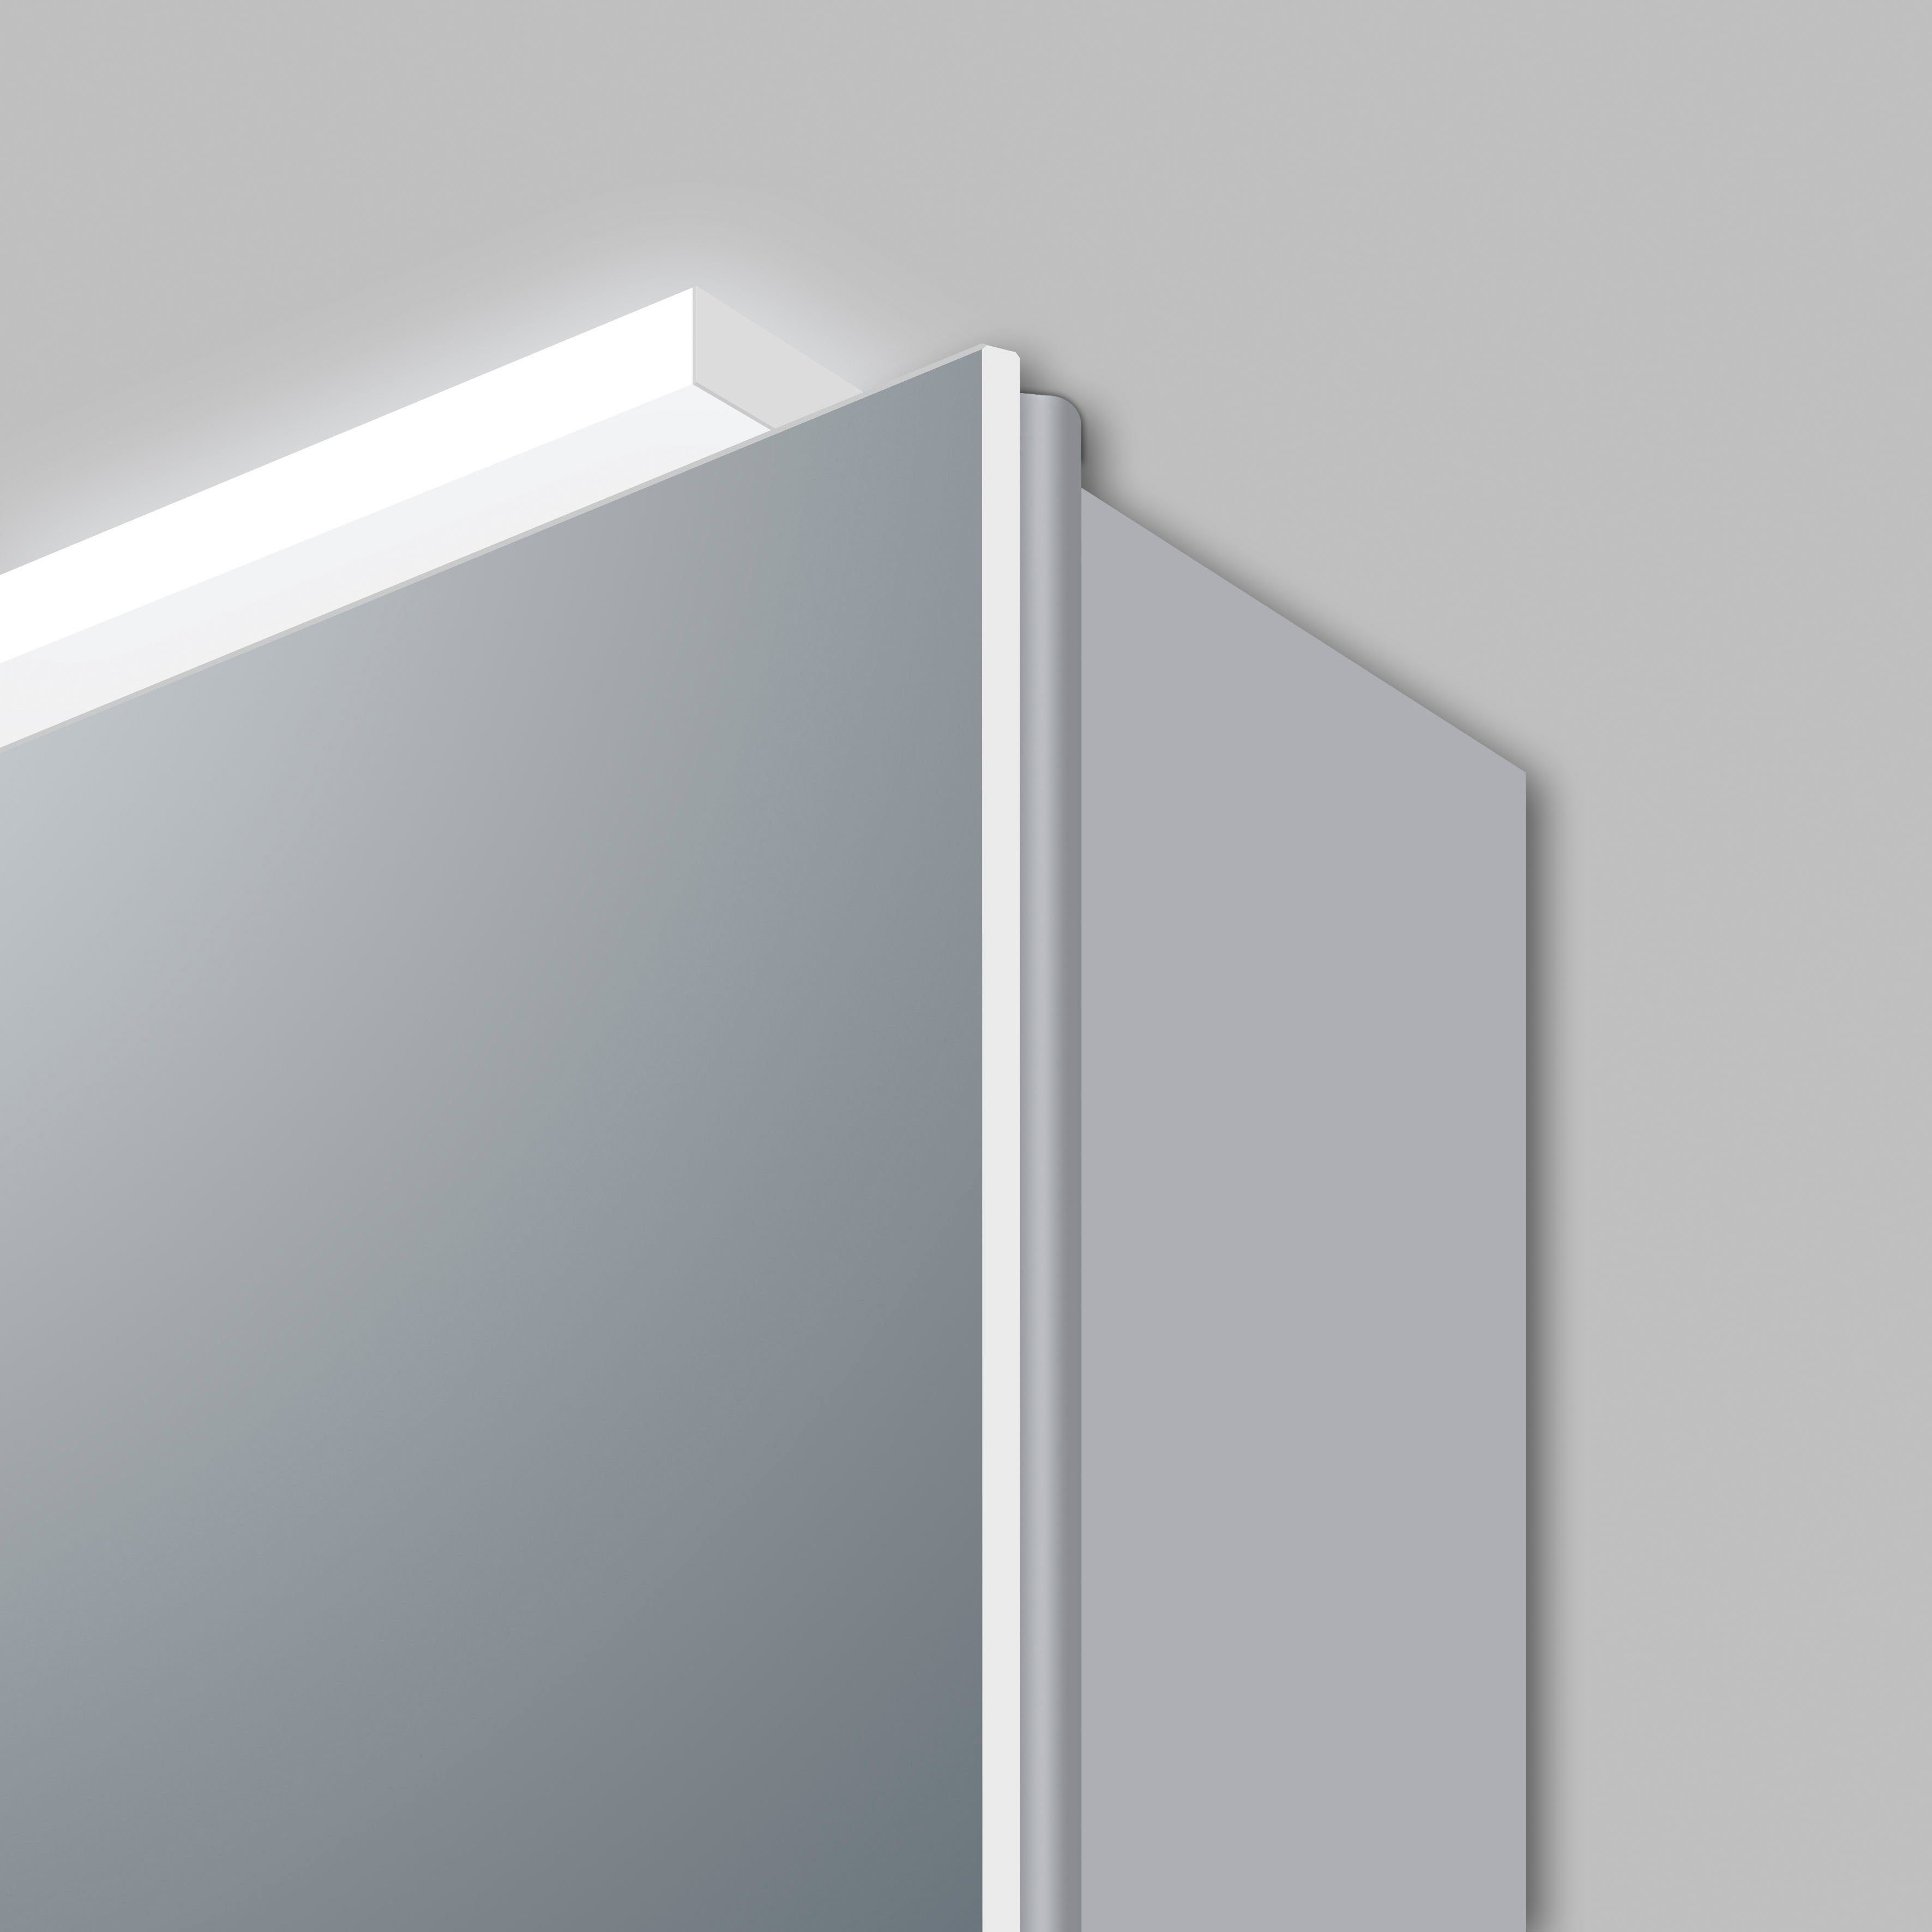 Talos Spiegelschrank Silver Magic LED-Beleuchtung, mit Größen verschiedene